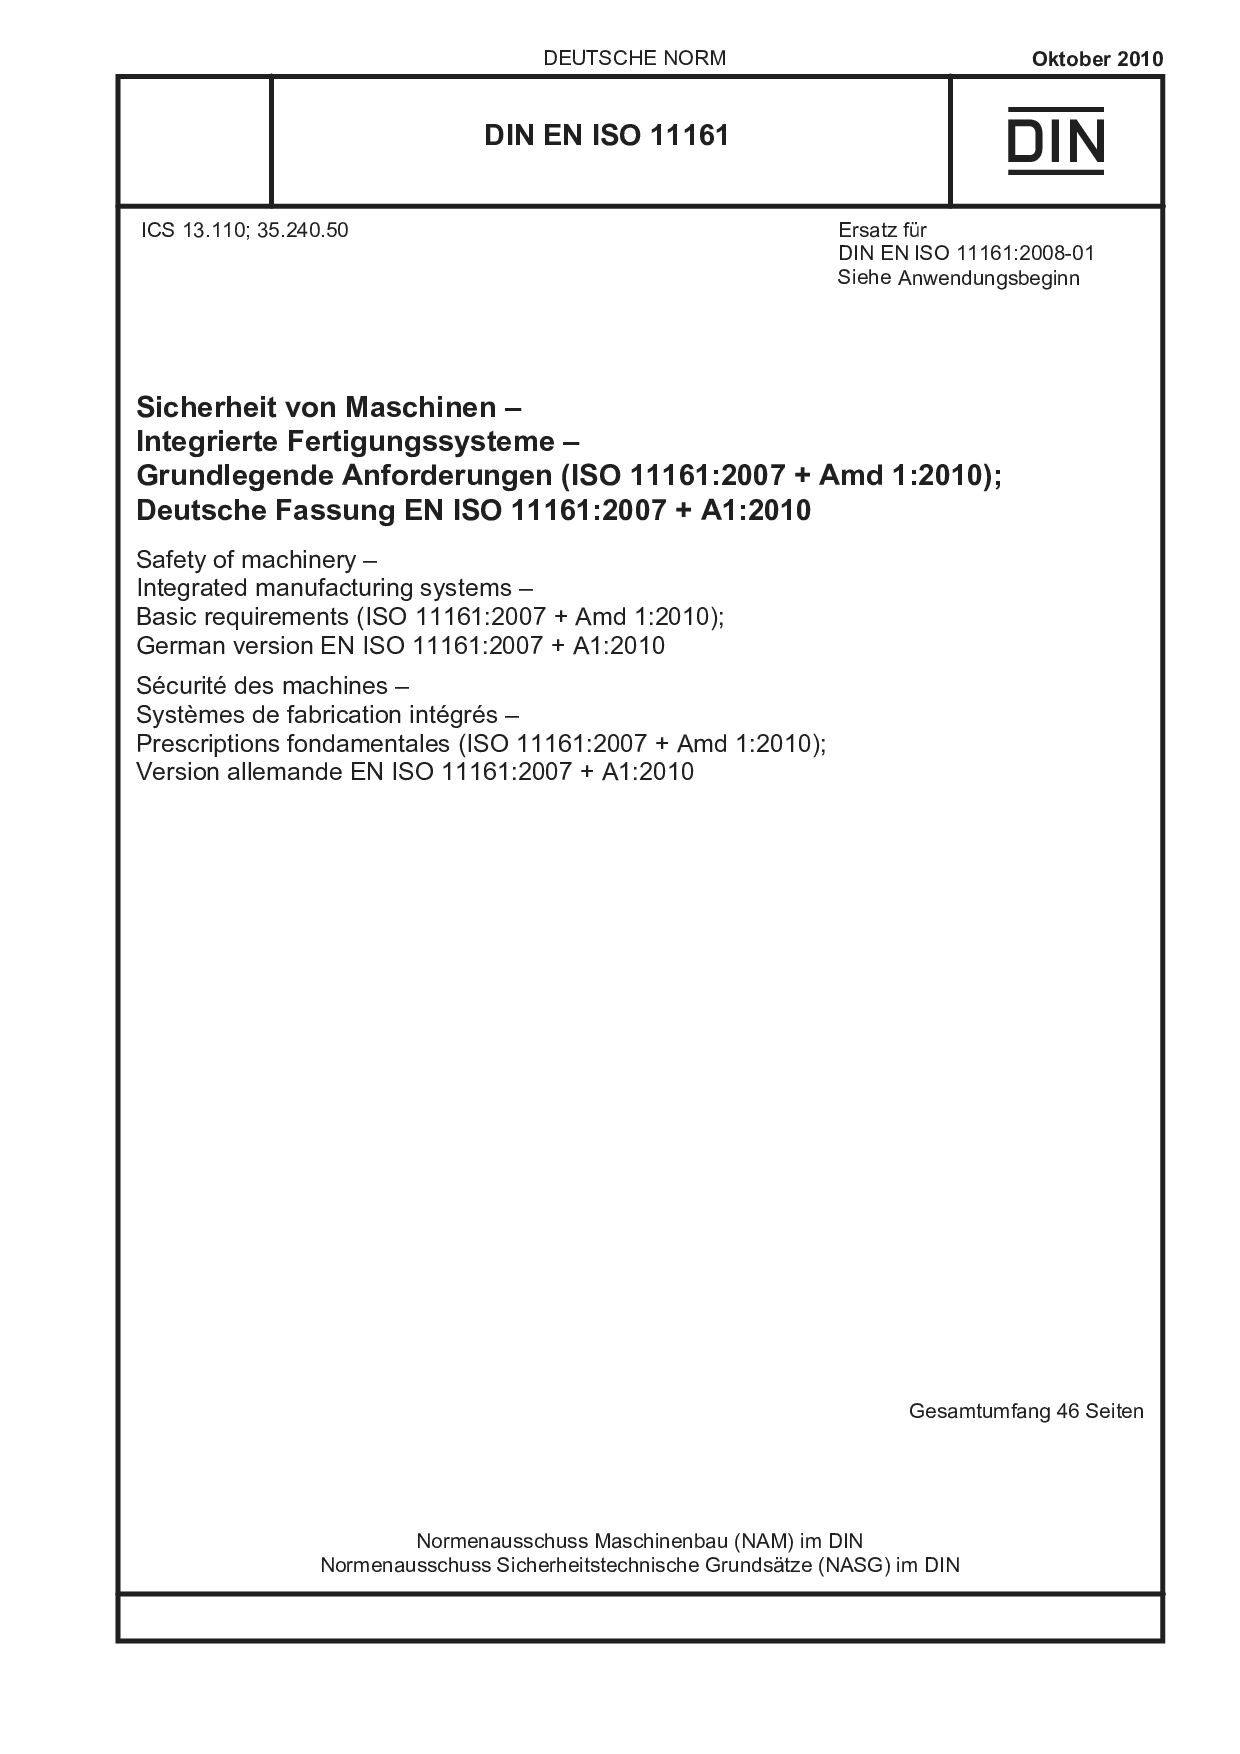 DIN EN ISO 11161:2010封面图